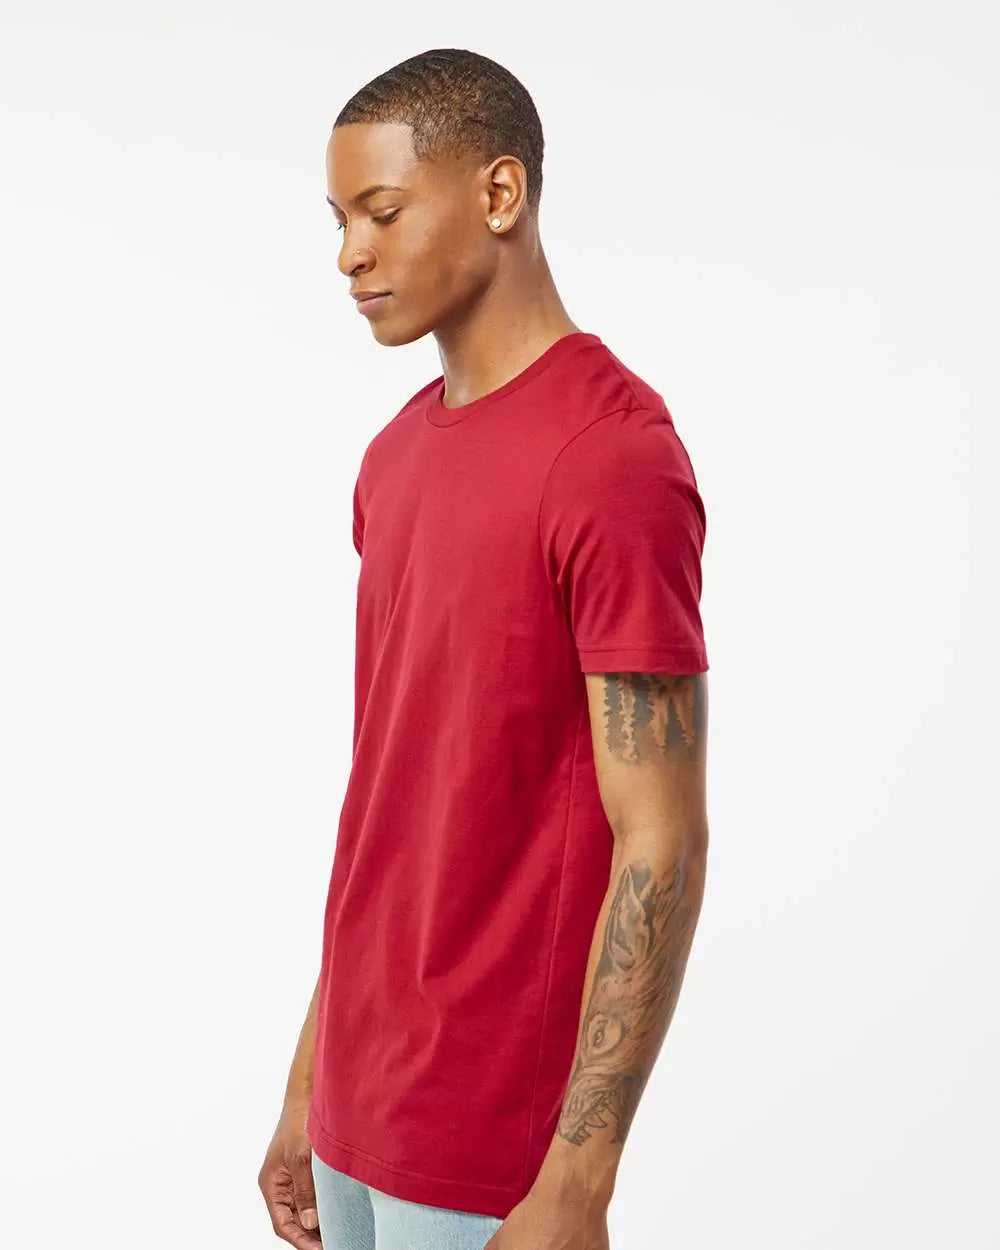 Tultex 502 Premium Cotton T-Shirt - Cardinal - HIT a Double - 2